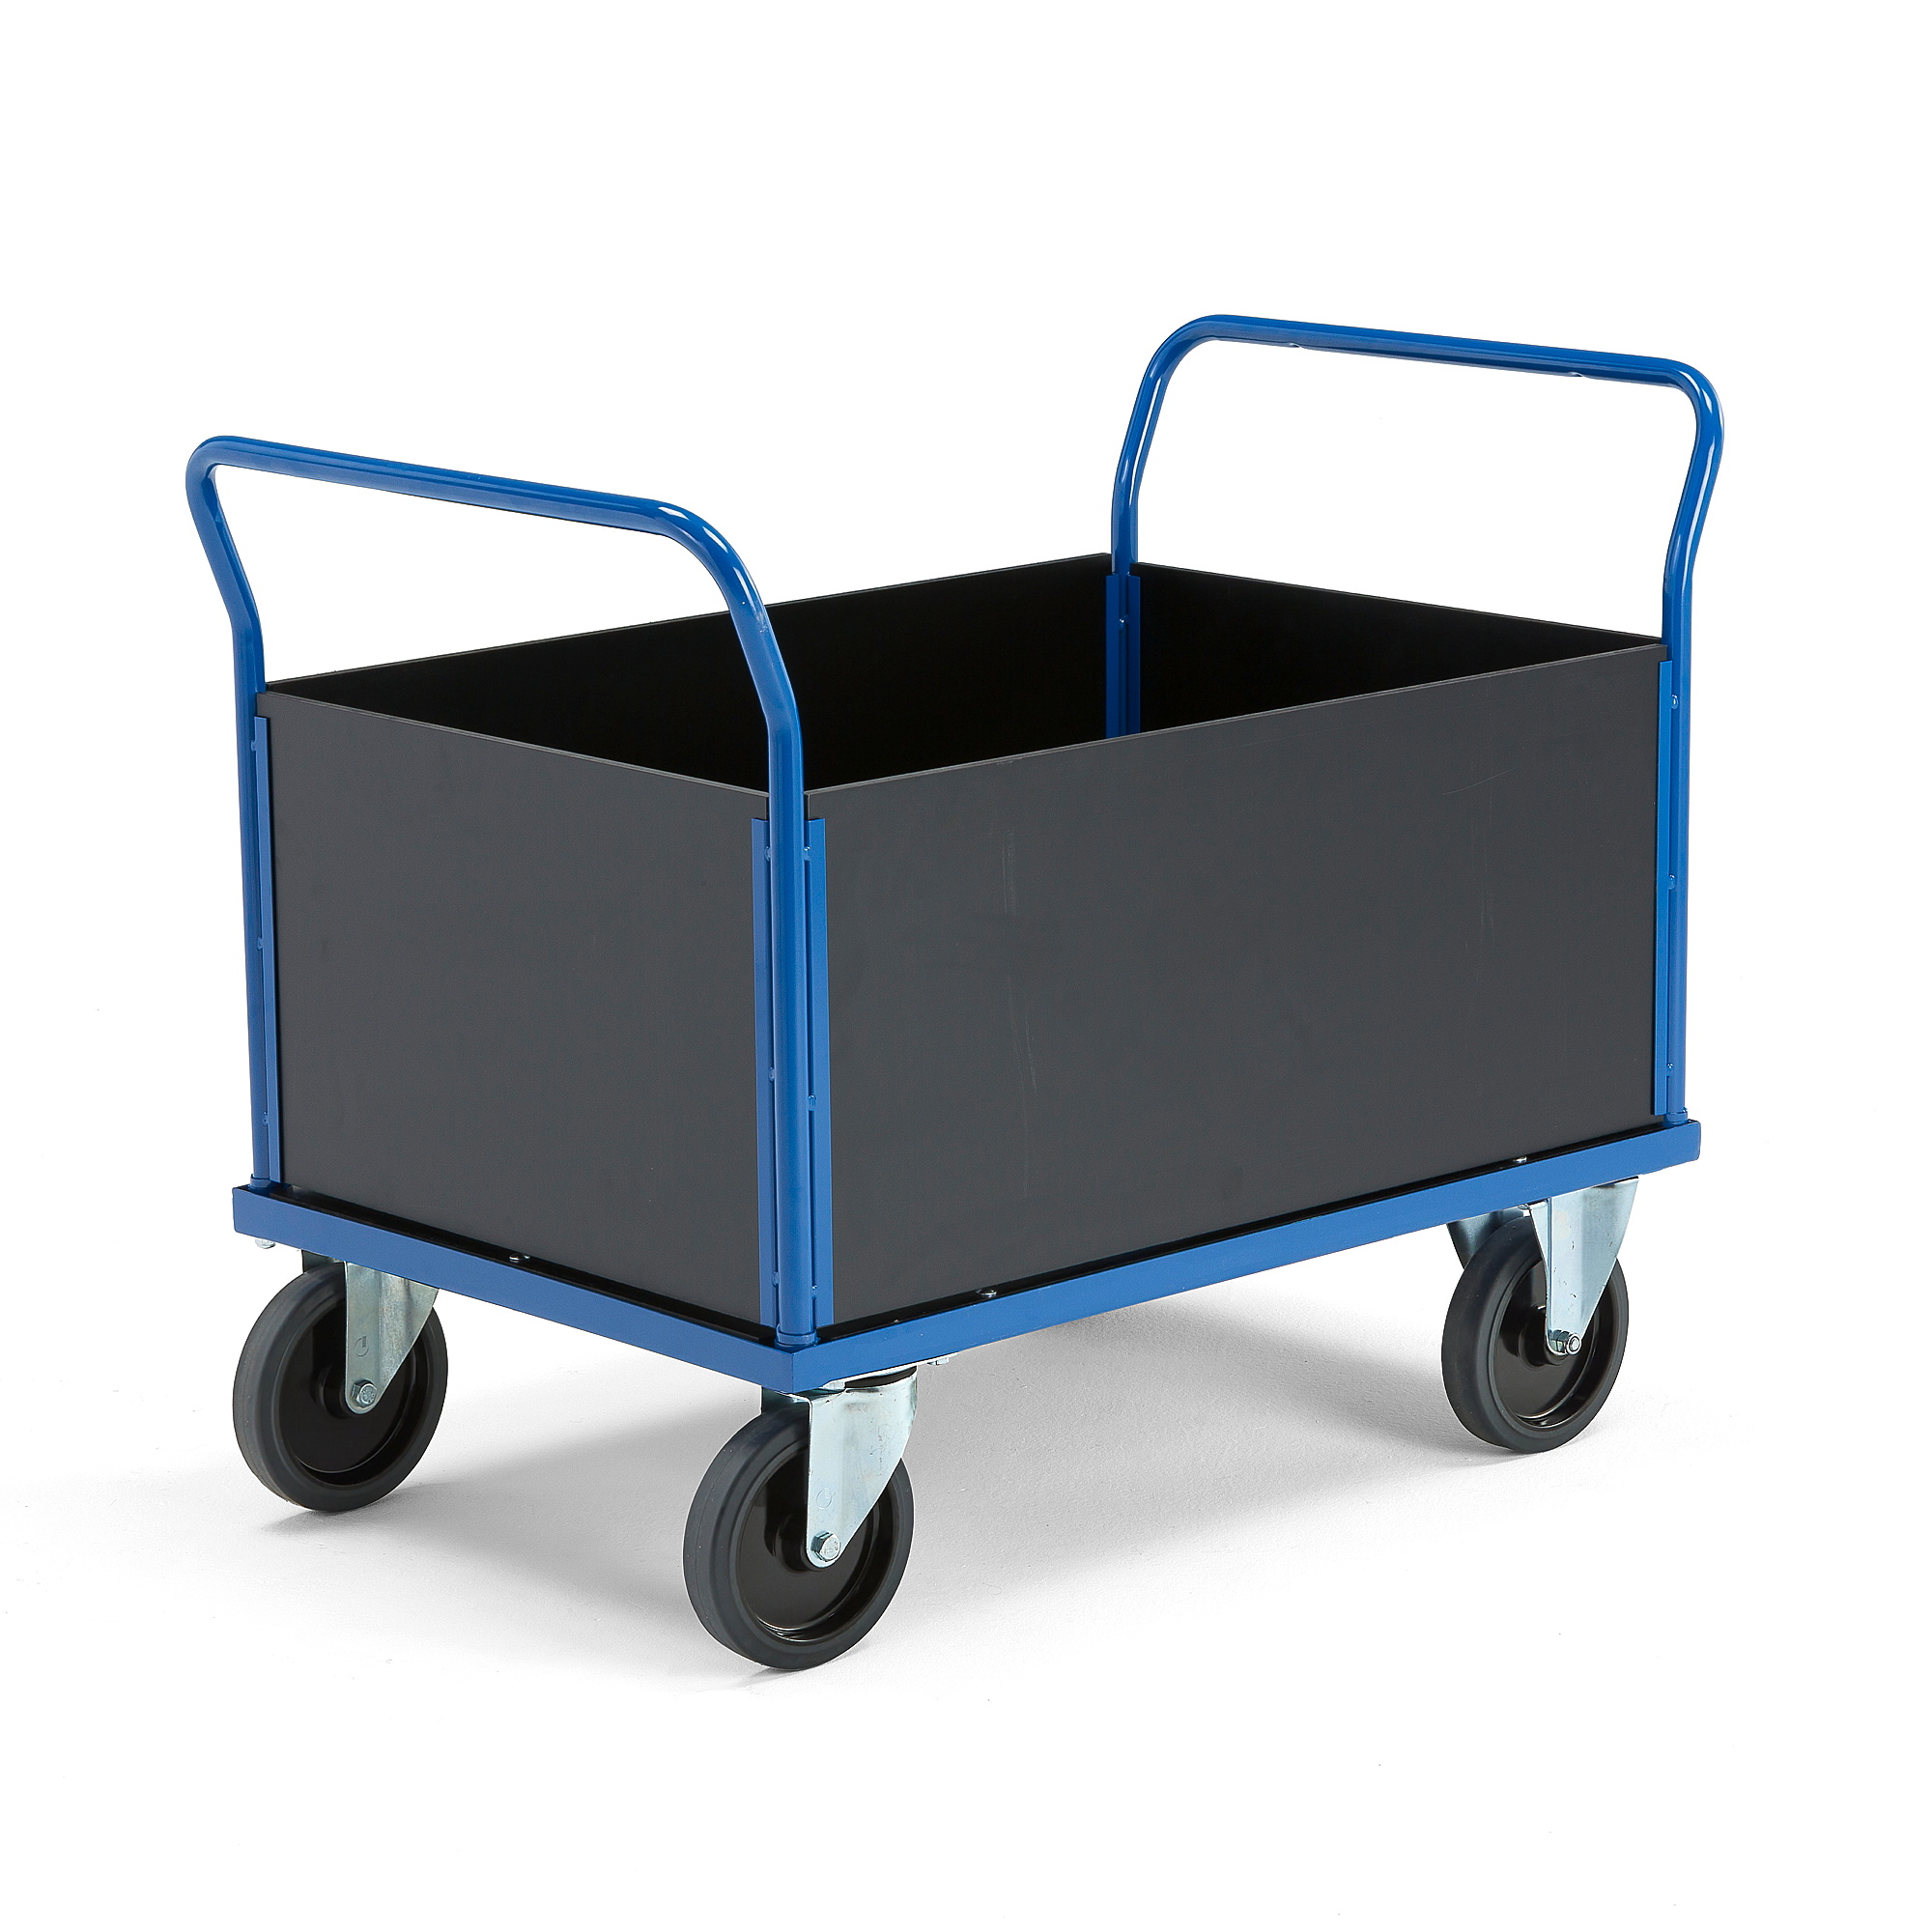 Plošinový vozík TRANSFER, 4 dřevěné stěny, 1000x700 mm, 1000 kg, elastická gumová kola, bez brzd